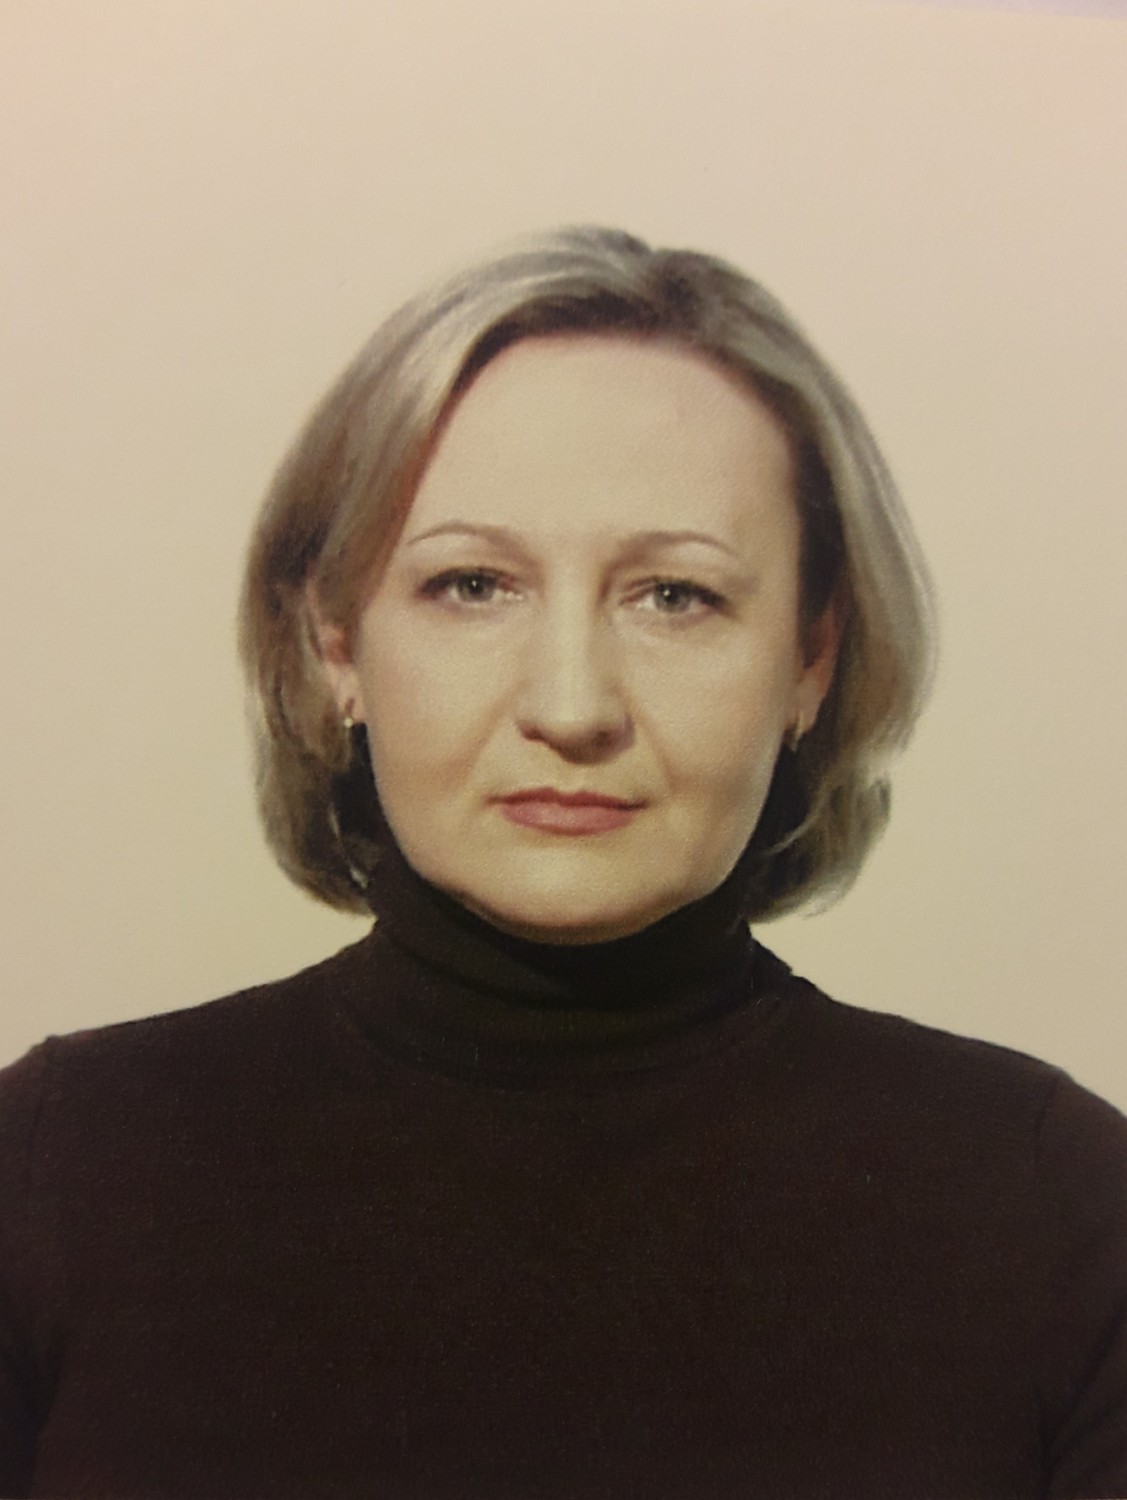 Пономарева Елена Юрьевна